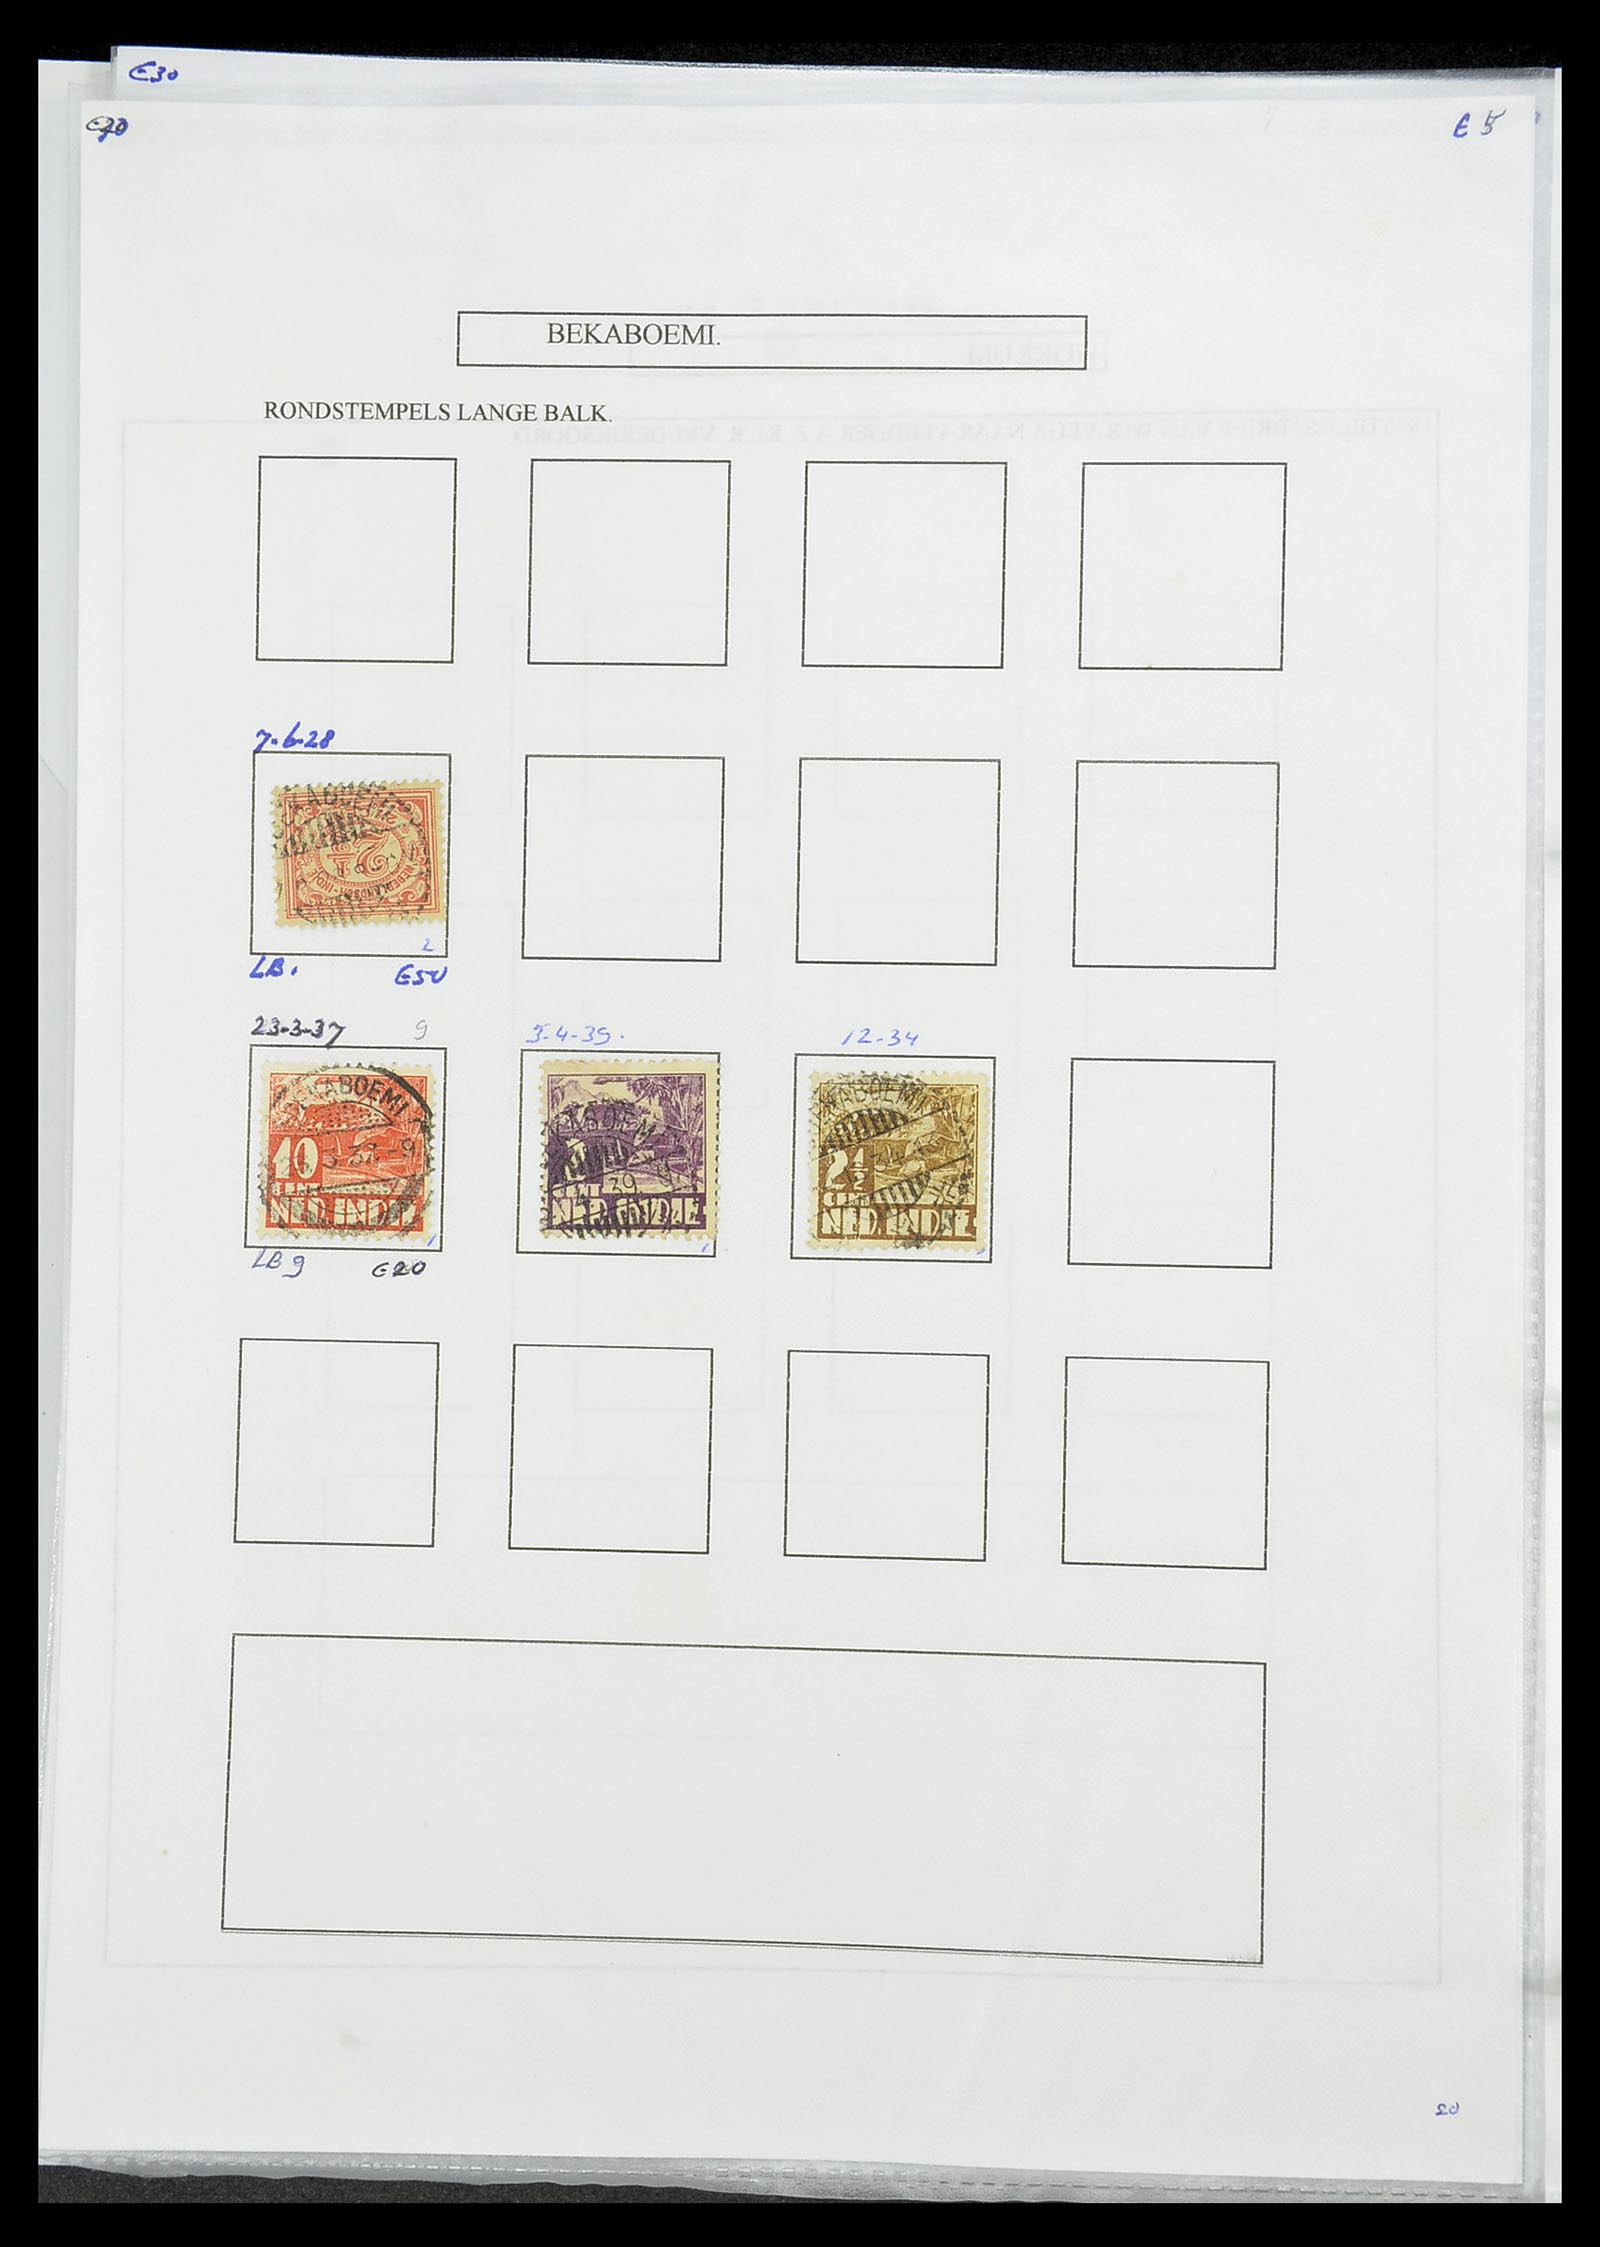 34693 087 - Postzegelverzameling 34693 Nederlands Indië stempels 1917-1948.